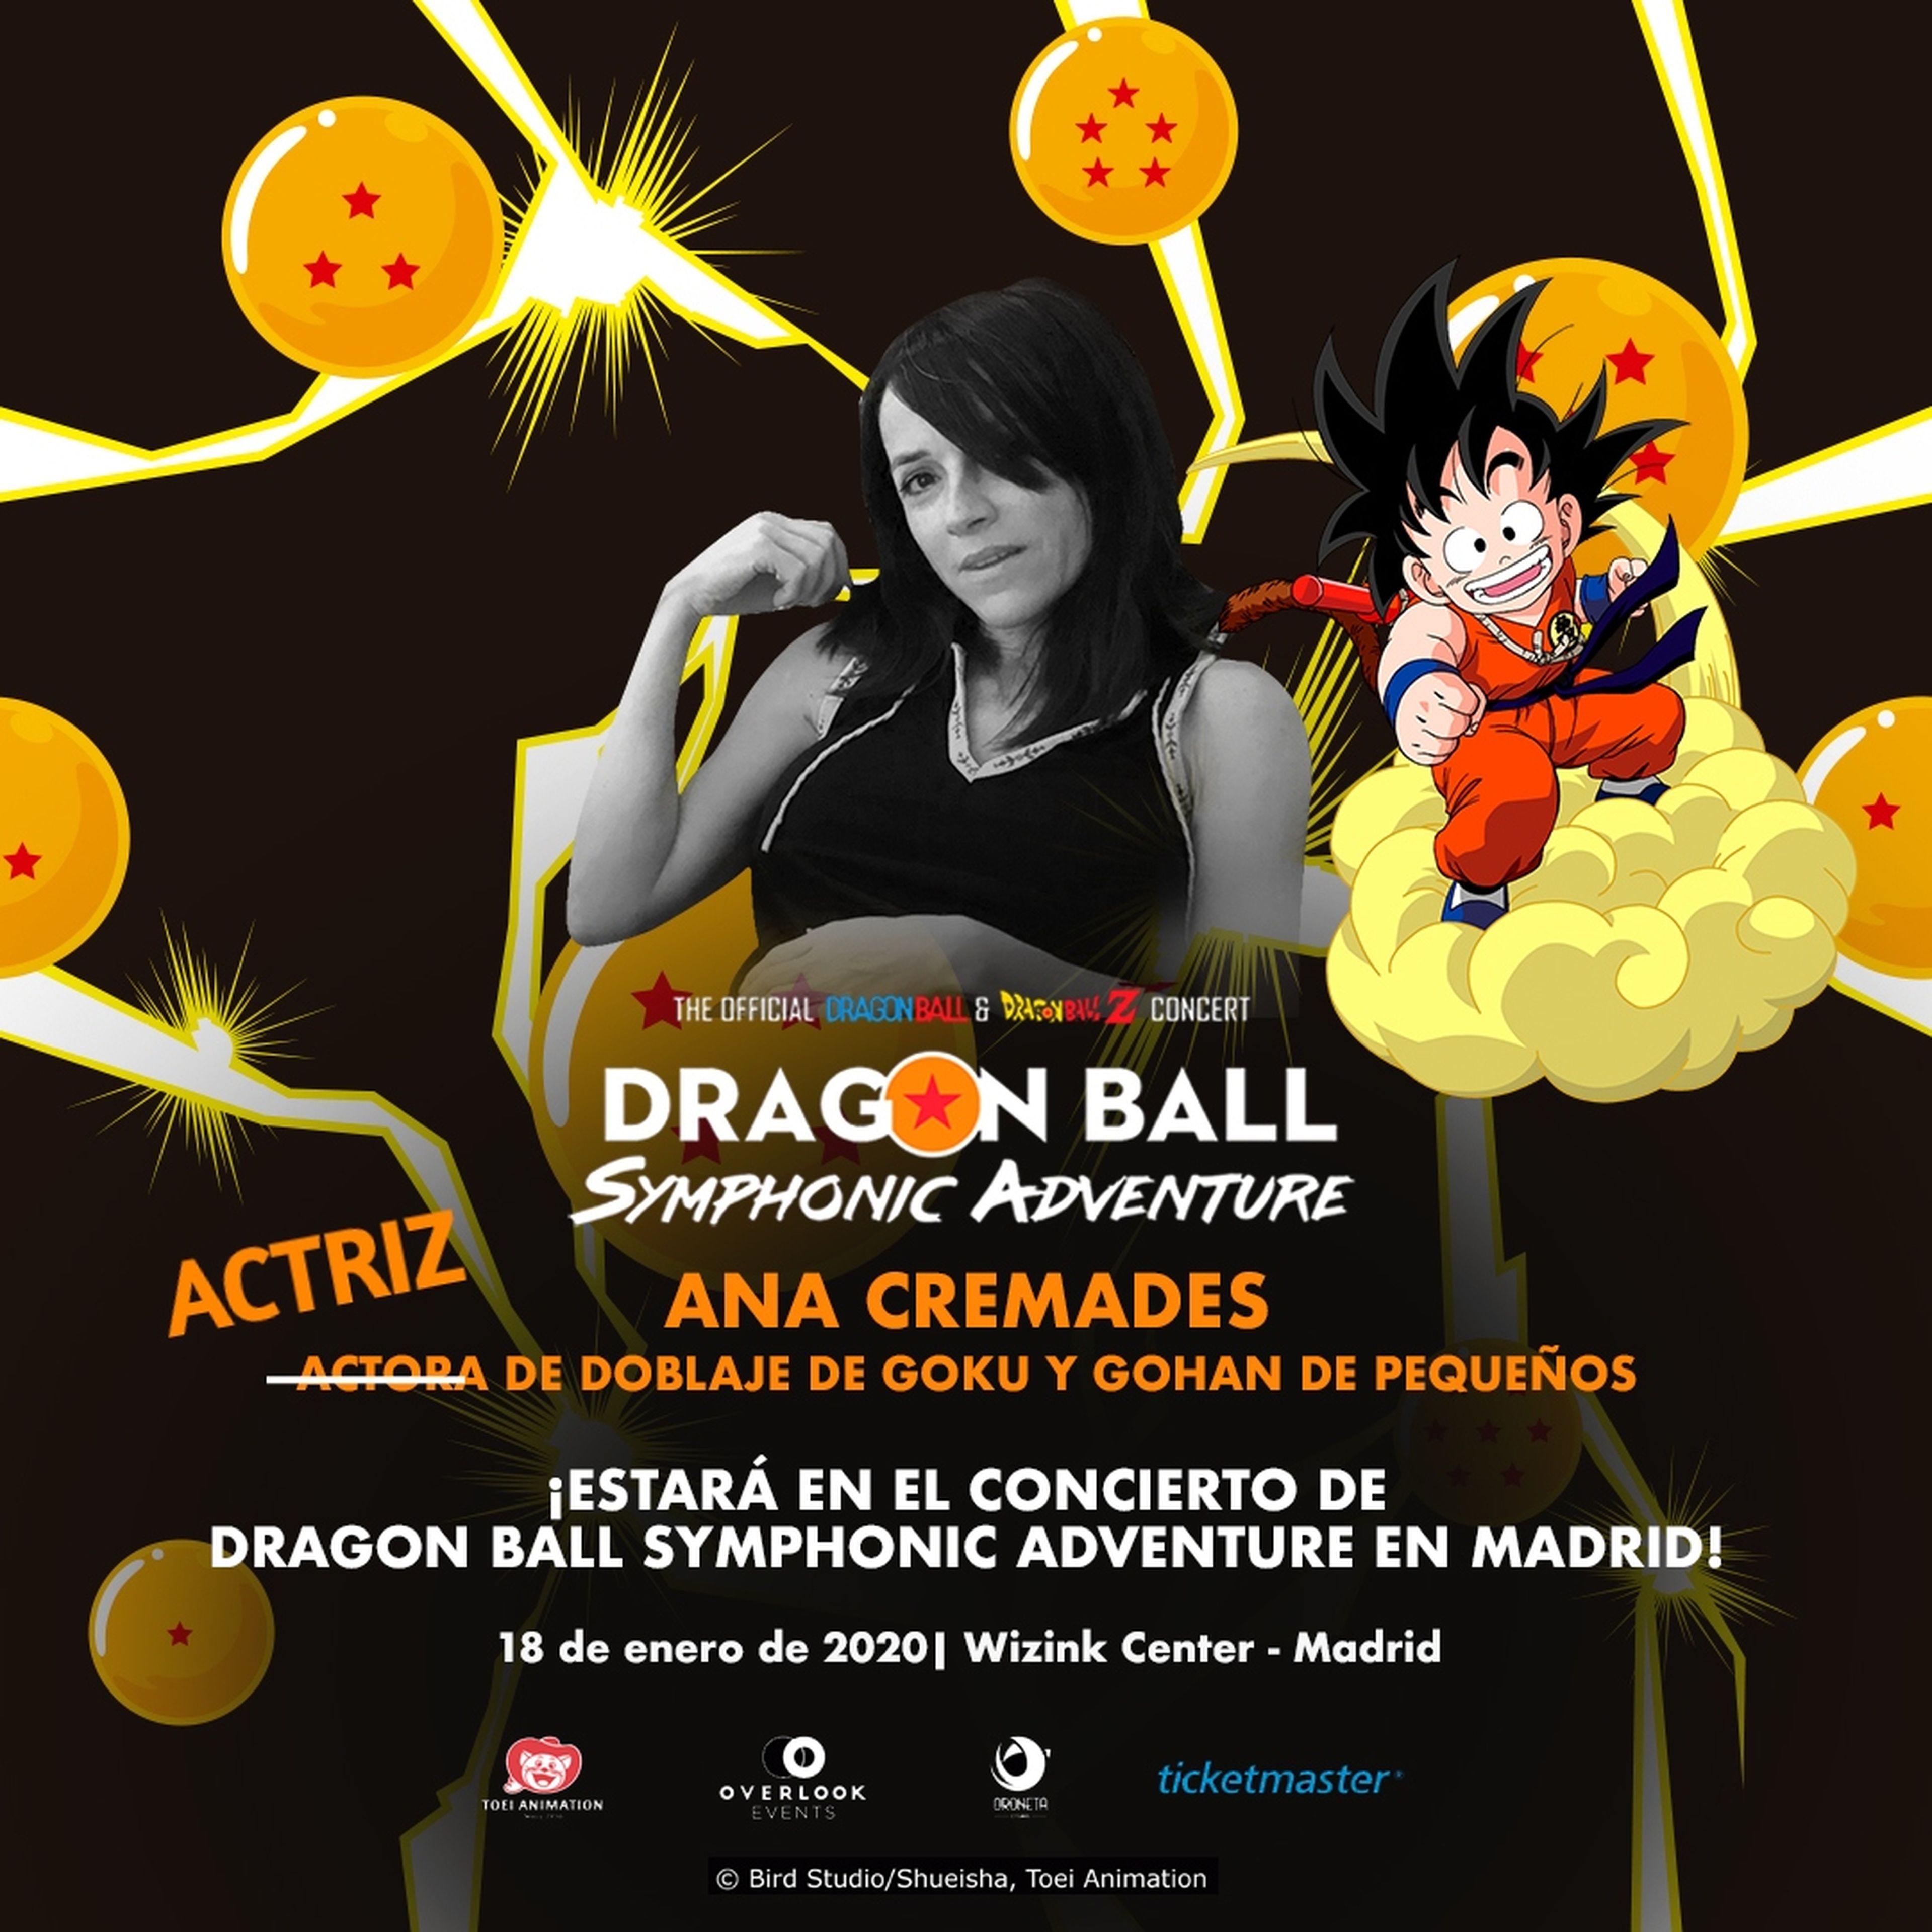 Ana Cremades regresa a Dragon Ball